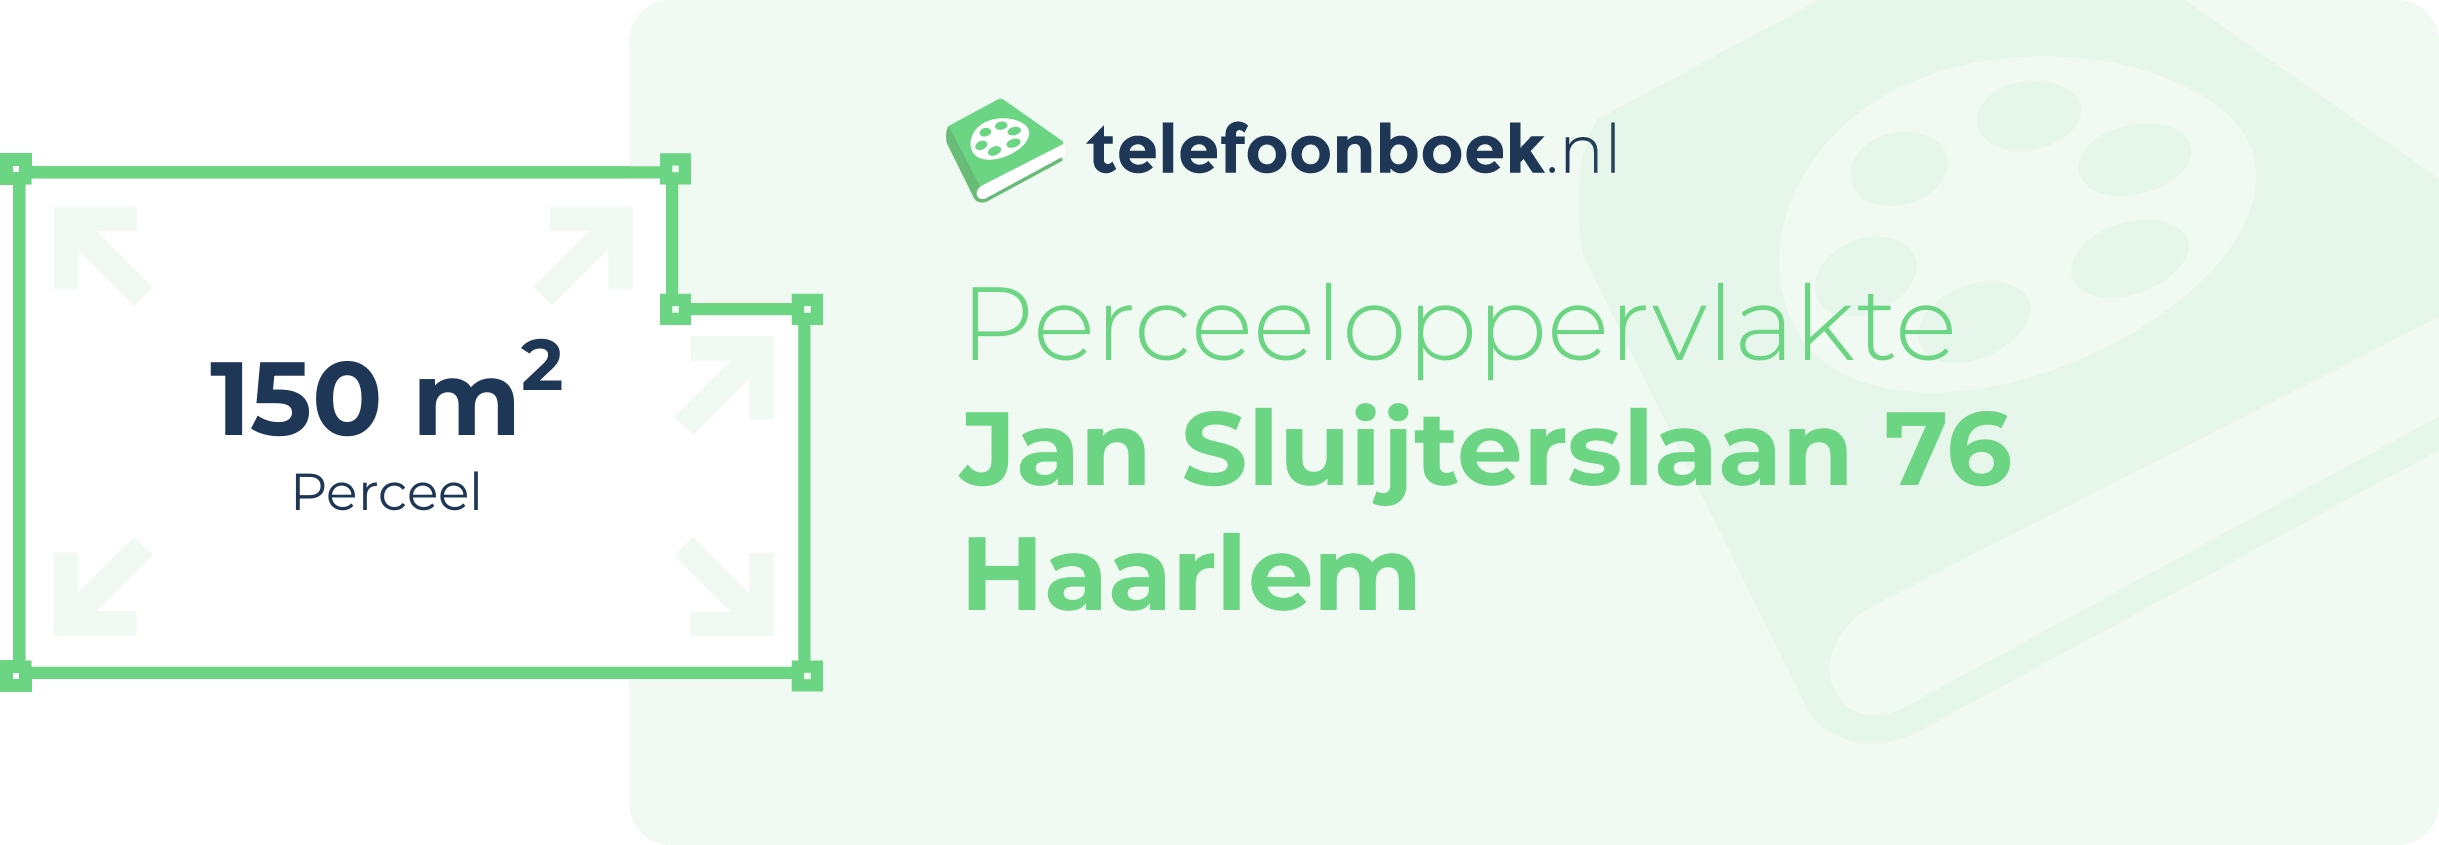 Perceeloppervlakte Jan Sluijterslaan 76 Haarlem